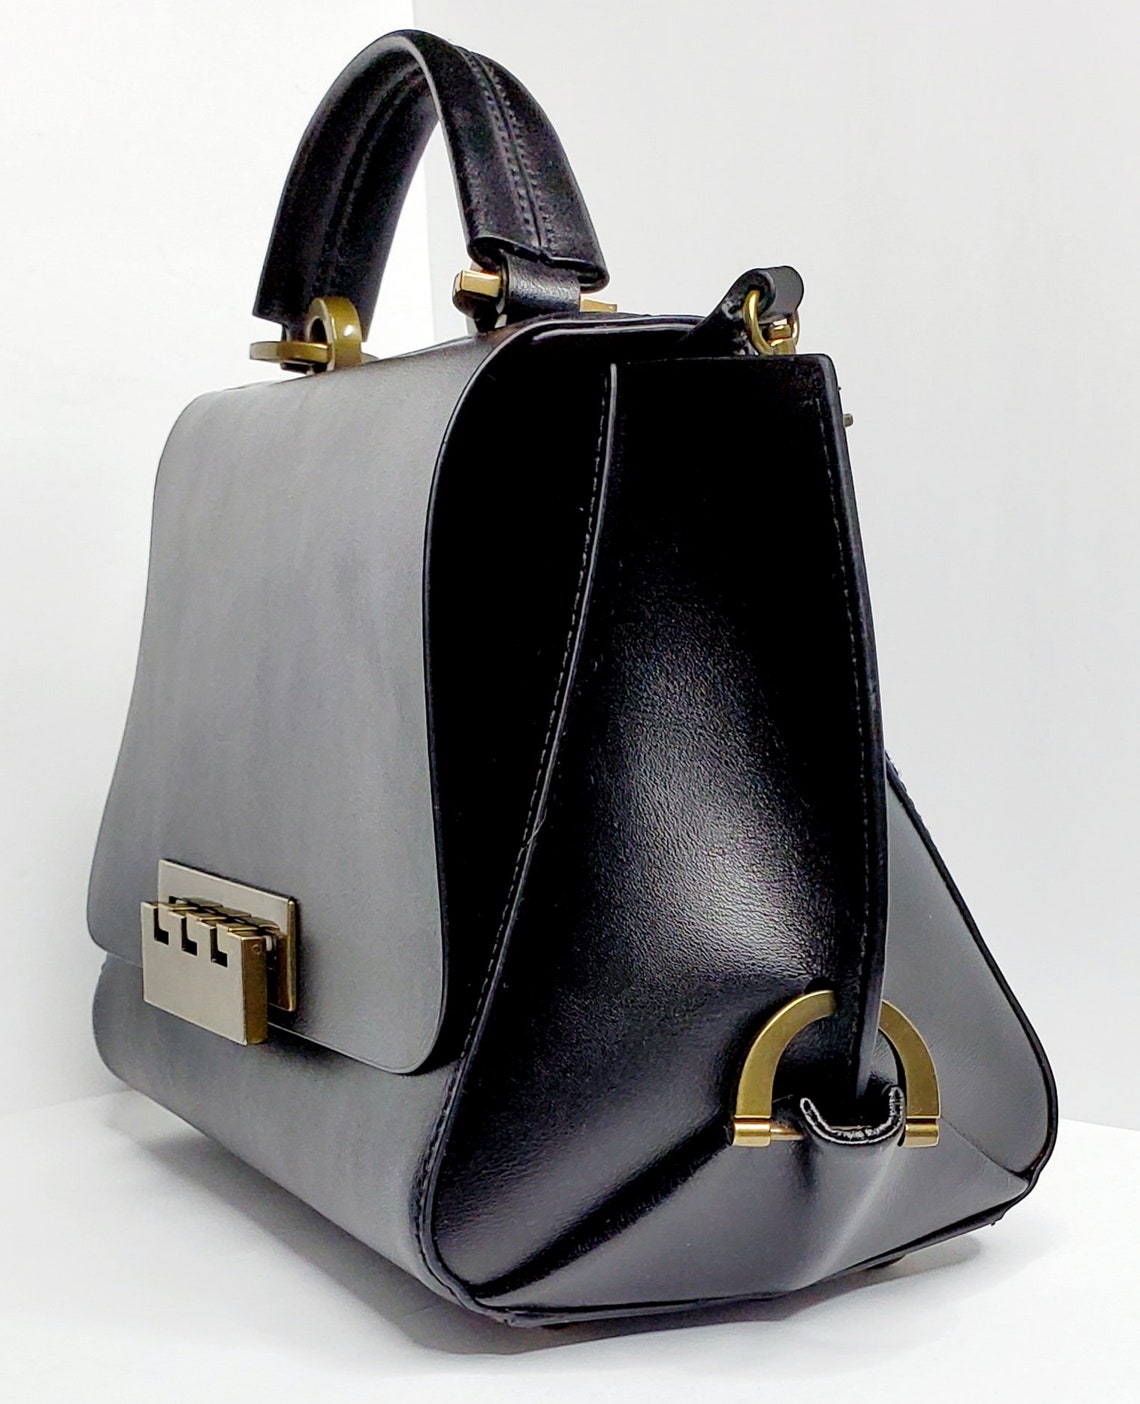 Authentic ZAC by Zac Posen Black Leather Satchel Handbag | Etsy